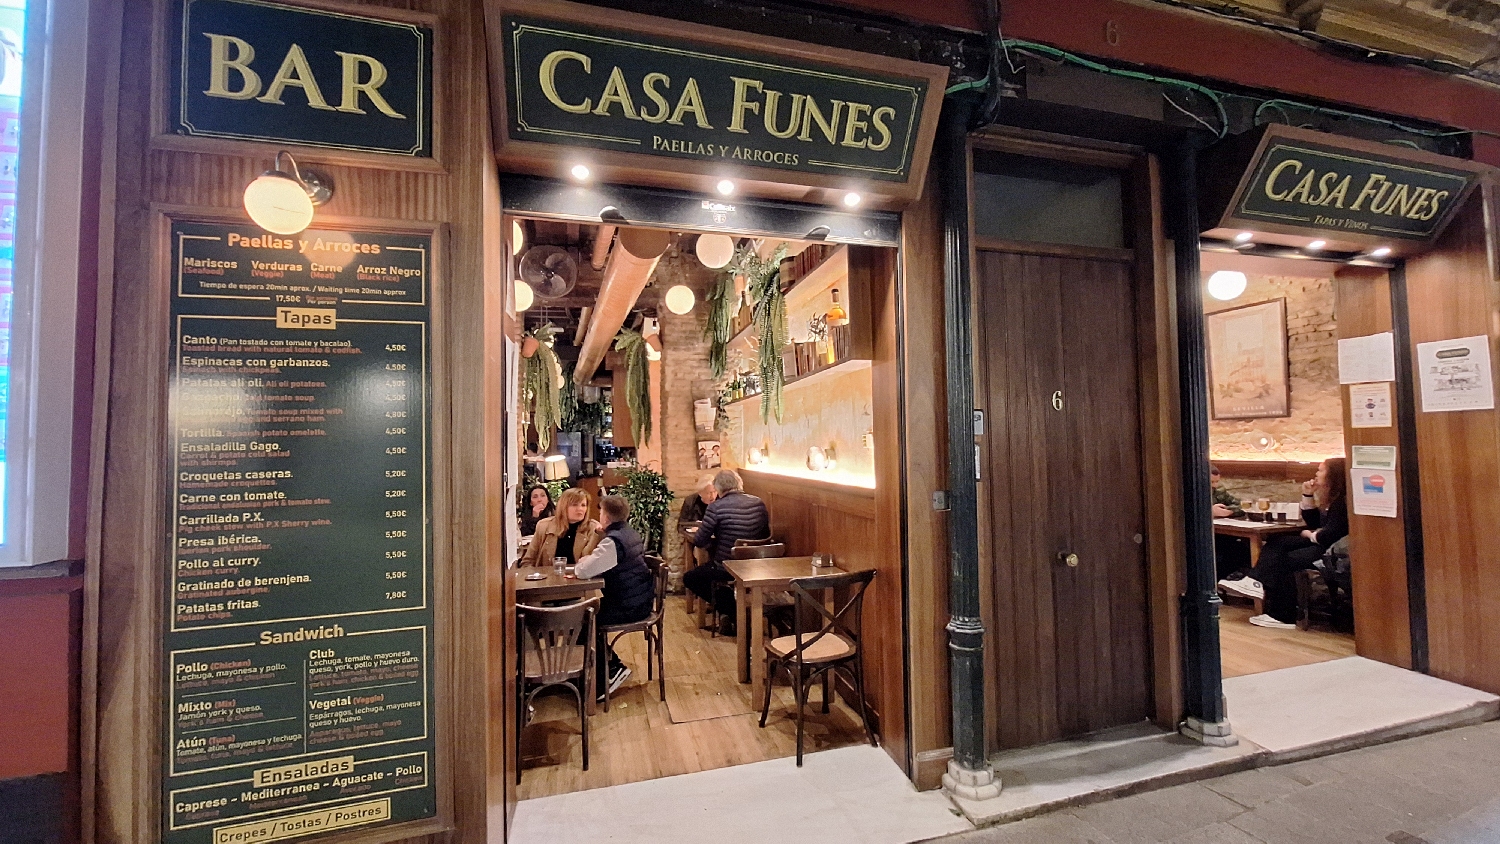 Vía de la Plata, Sevilla, egy étterem, a bejáratnál pont egy kétszemélyes szabad asztallal :-)